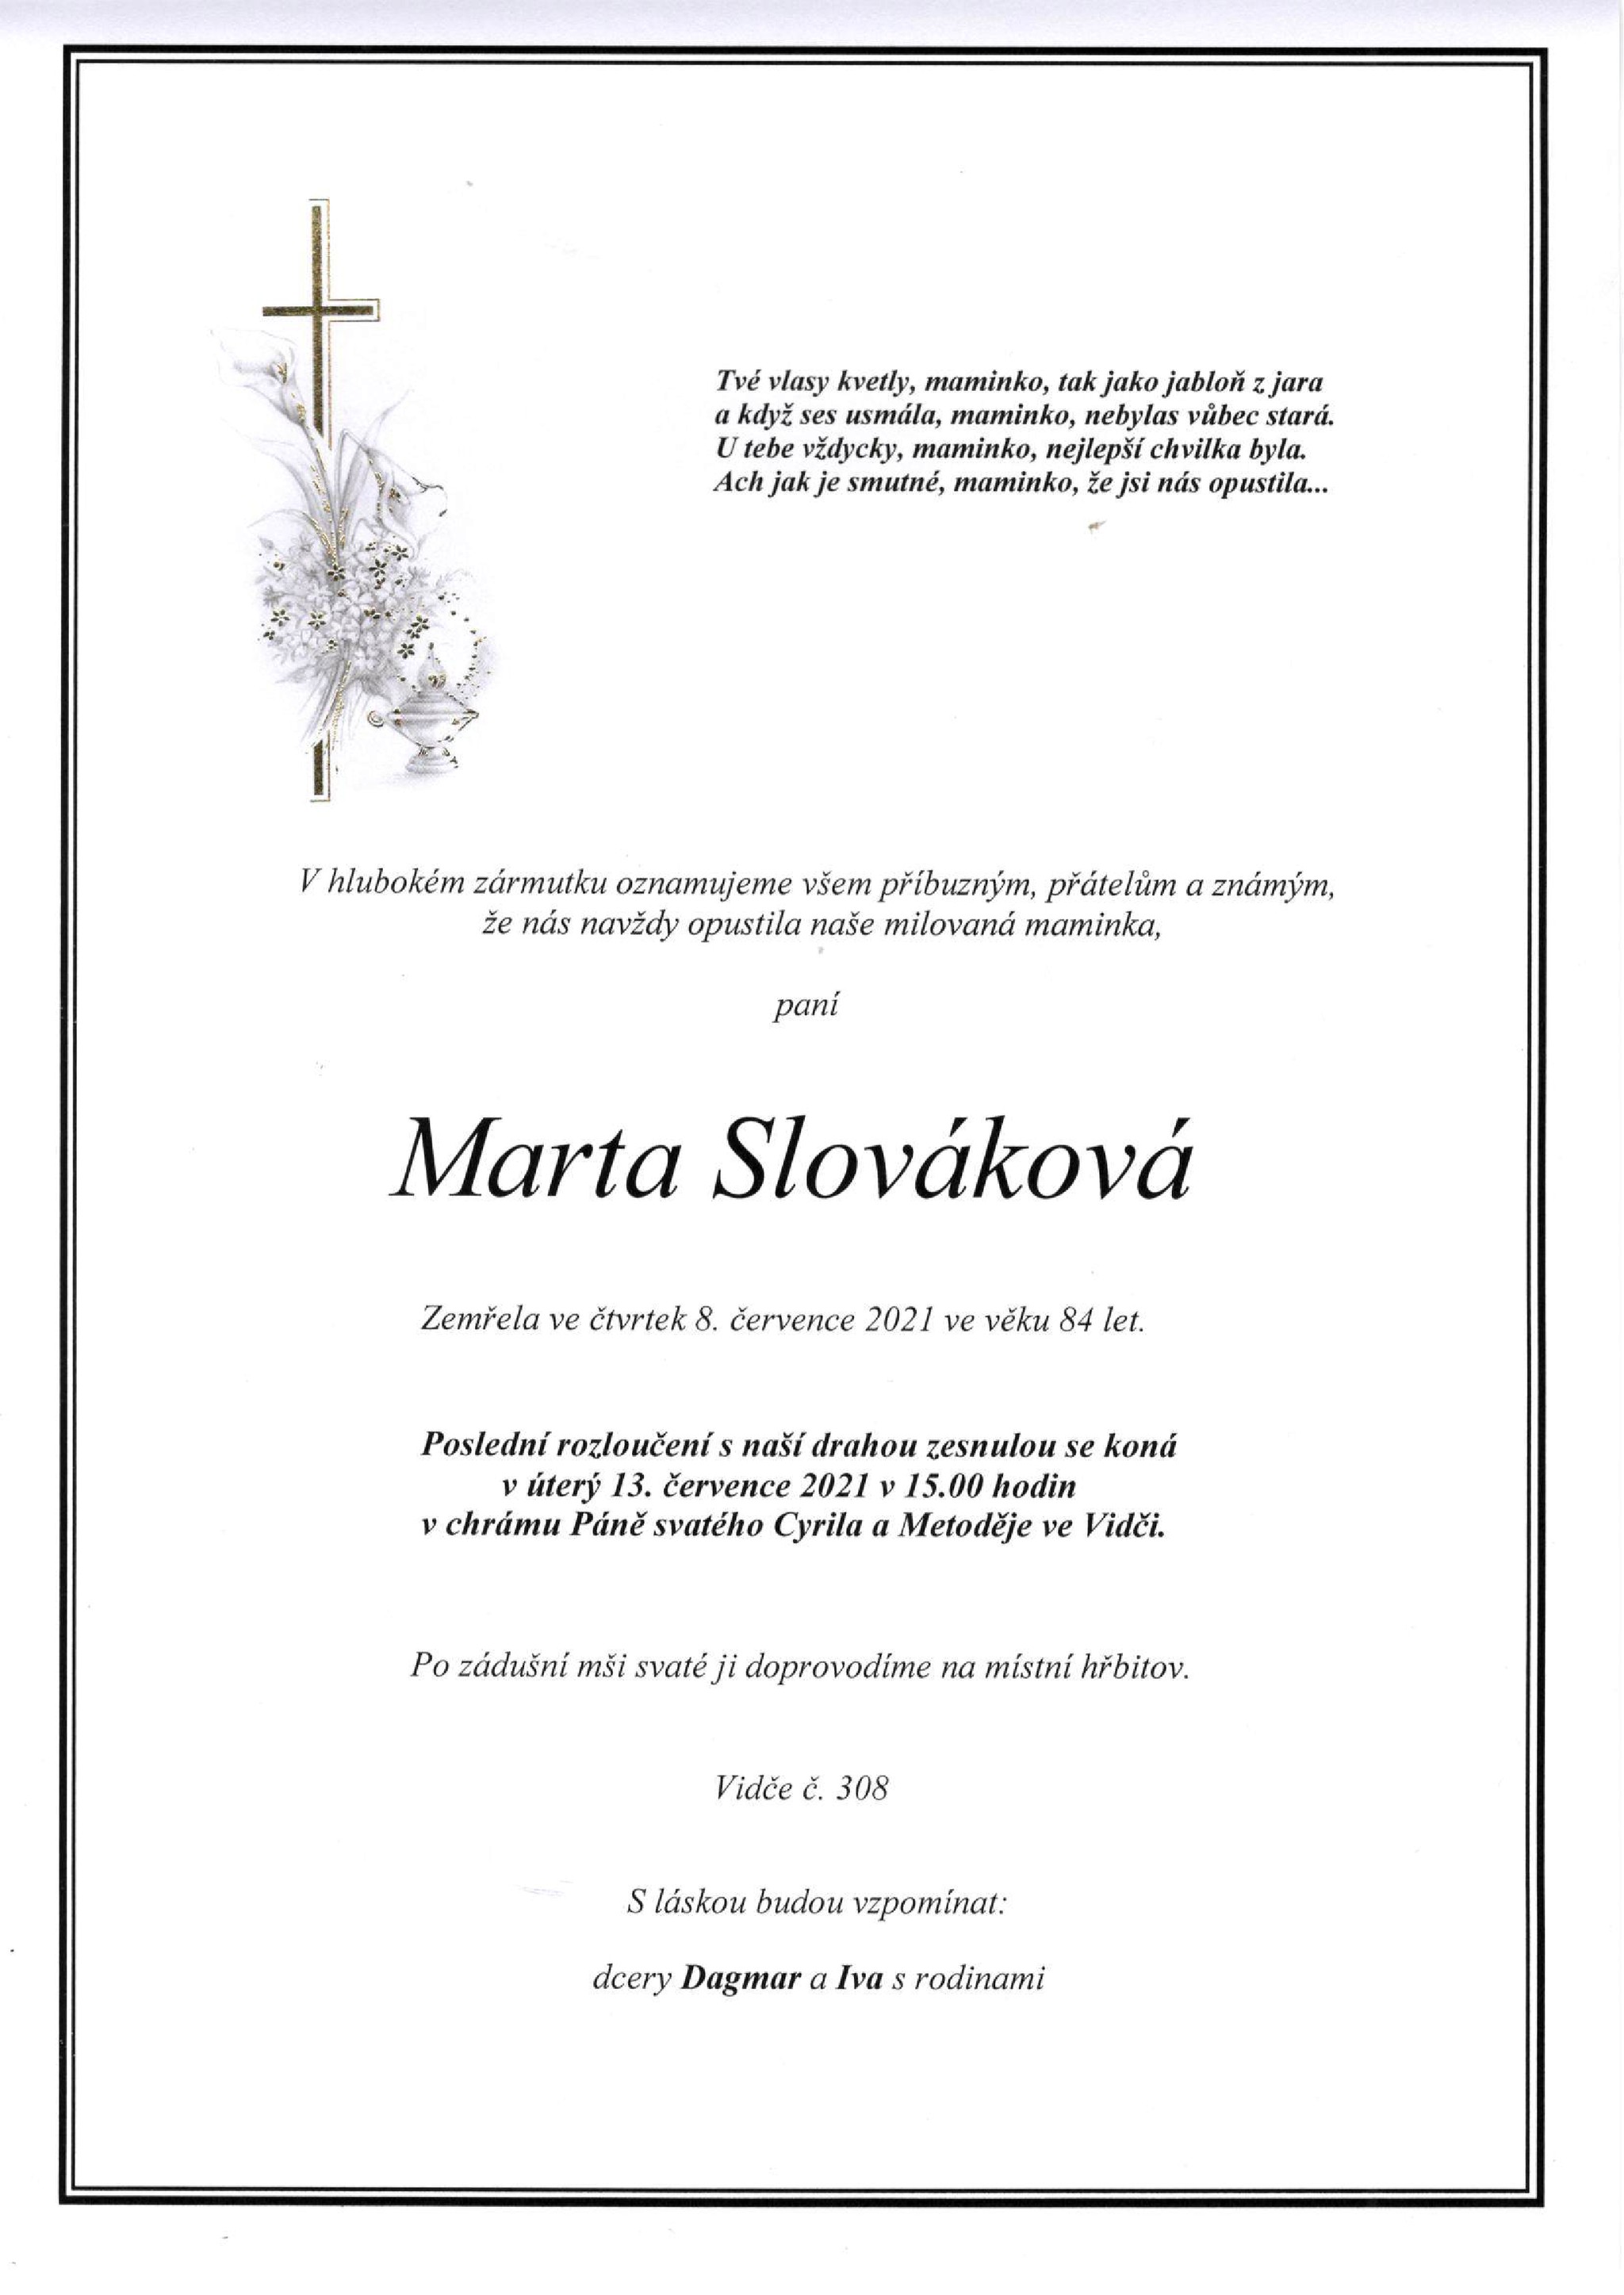 Marta Slováková